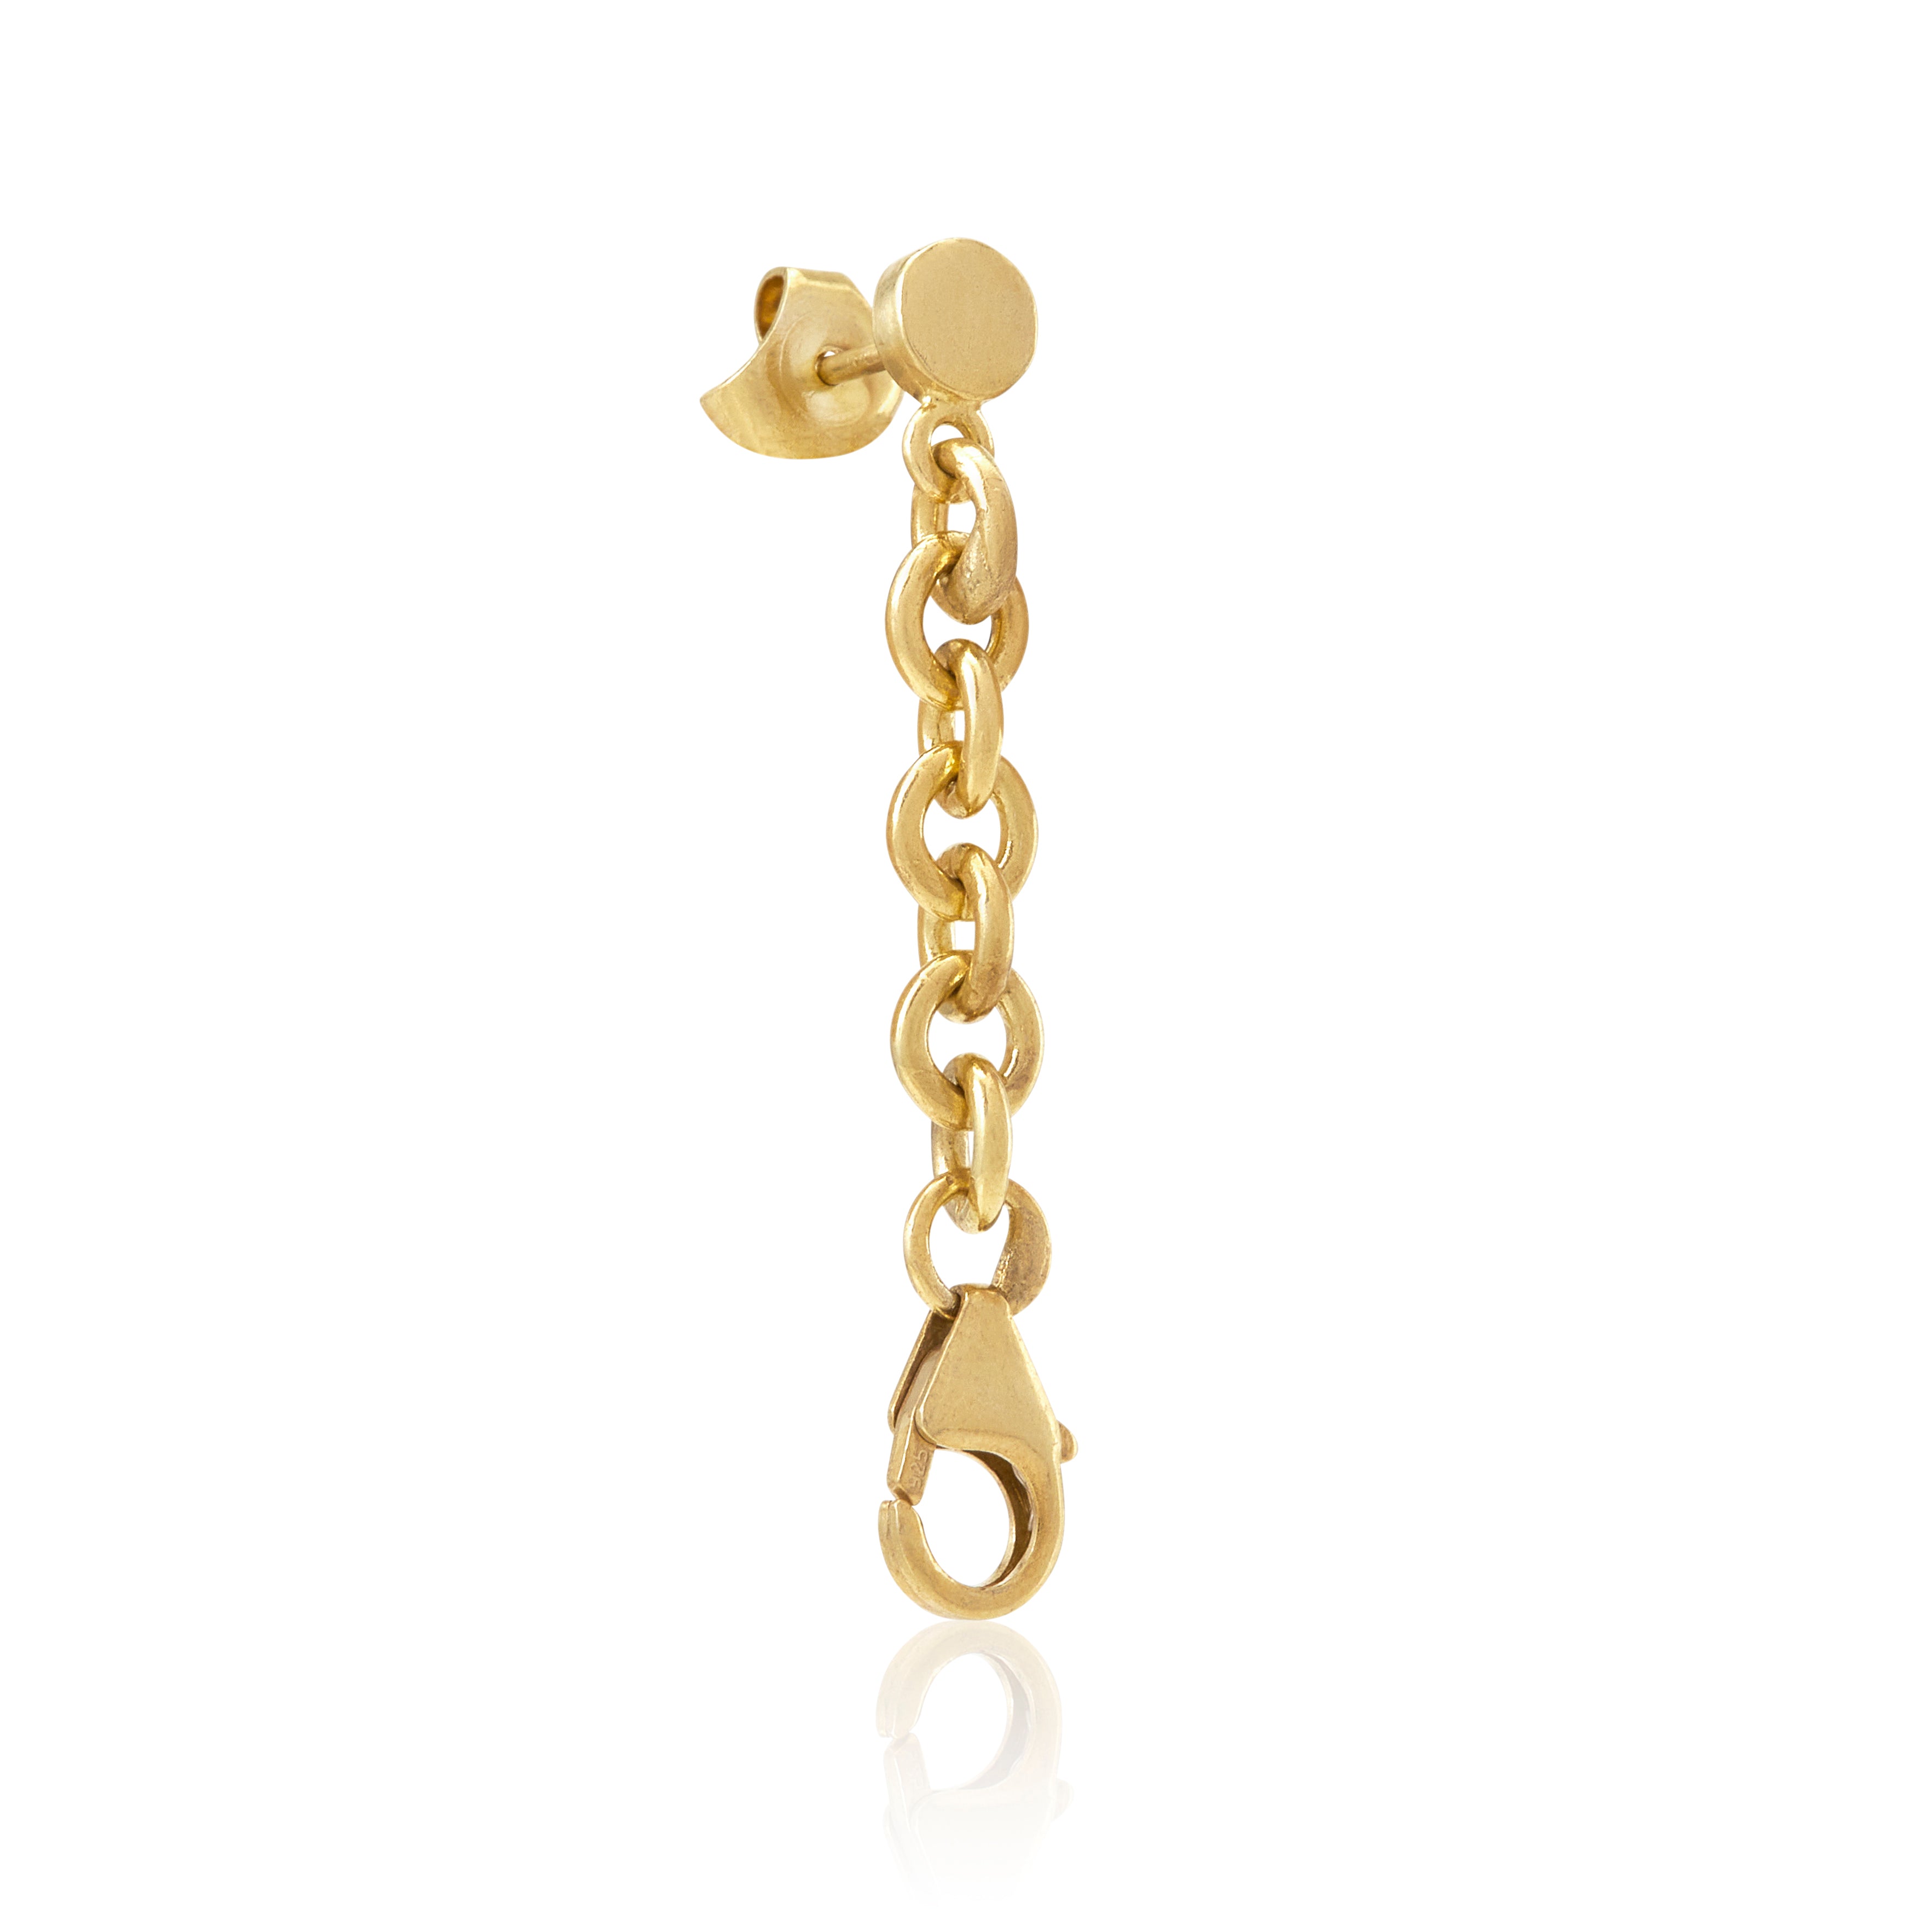 Safari earring drops in 18ct gold.